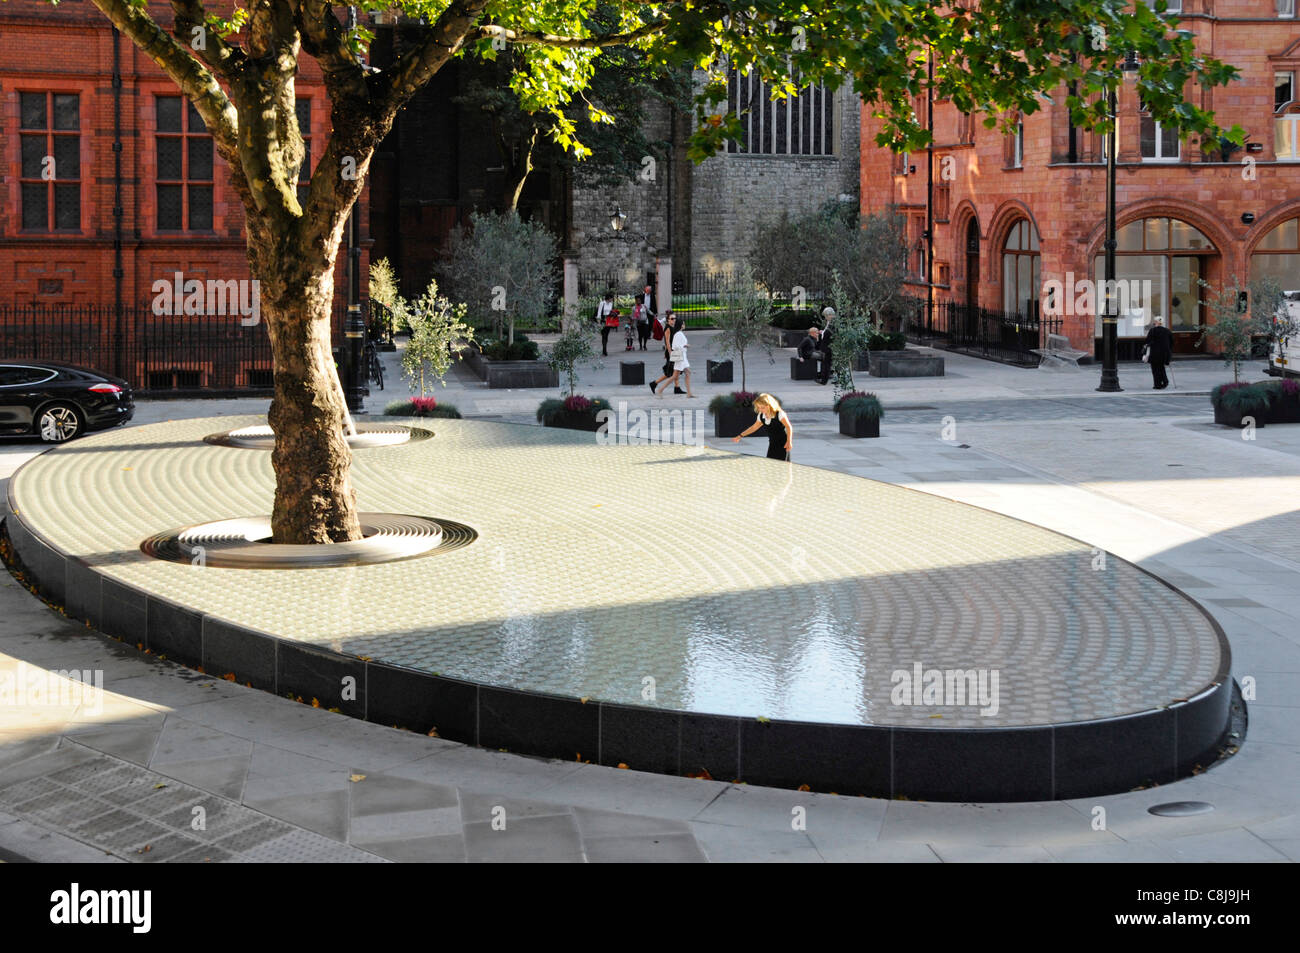 Scène de rue à Londres Carlos Place & Mount Street Mayfair «silence' d'eau soulevée par Tadao Ando enroulé autour du tronc des arbres matures UK West End Banque D'Images